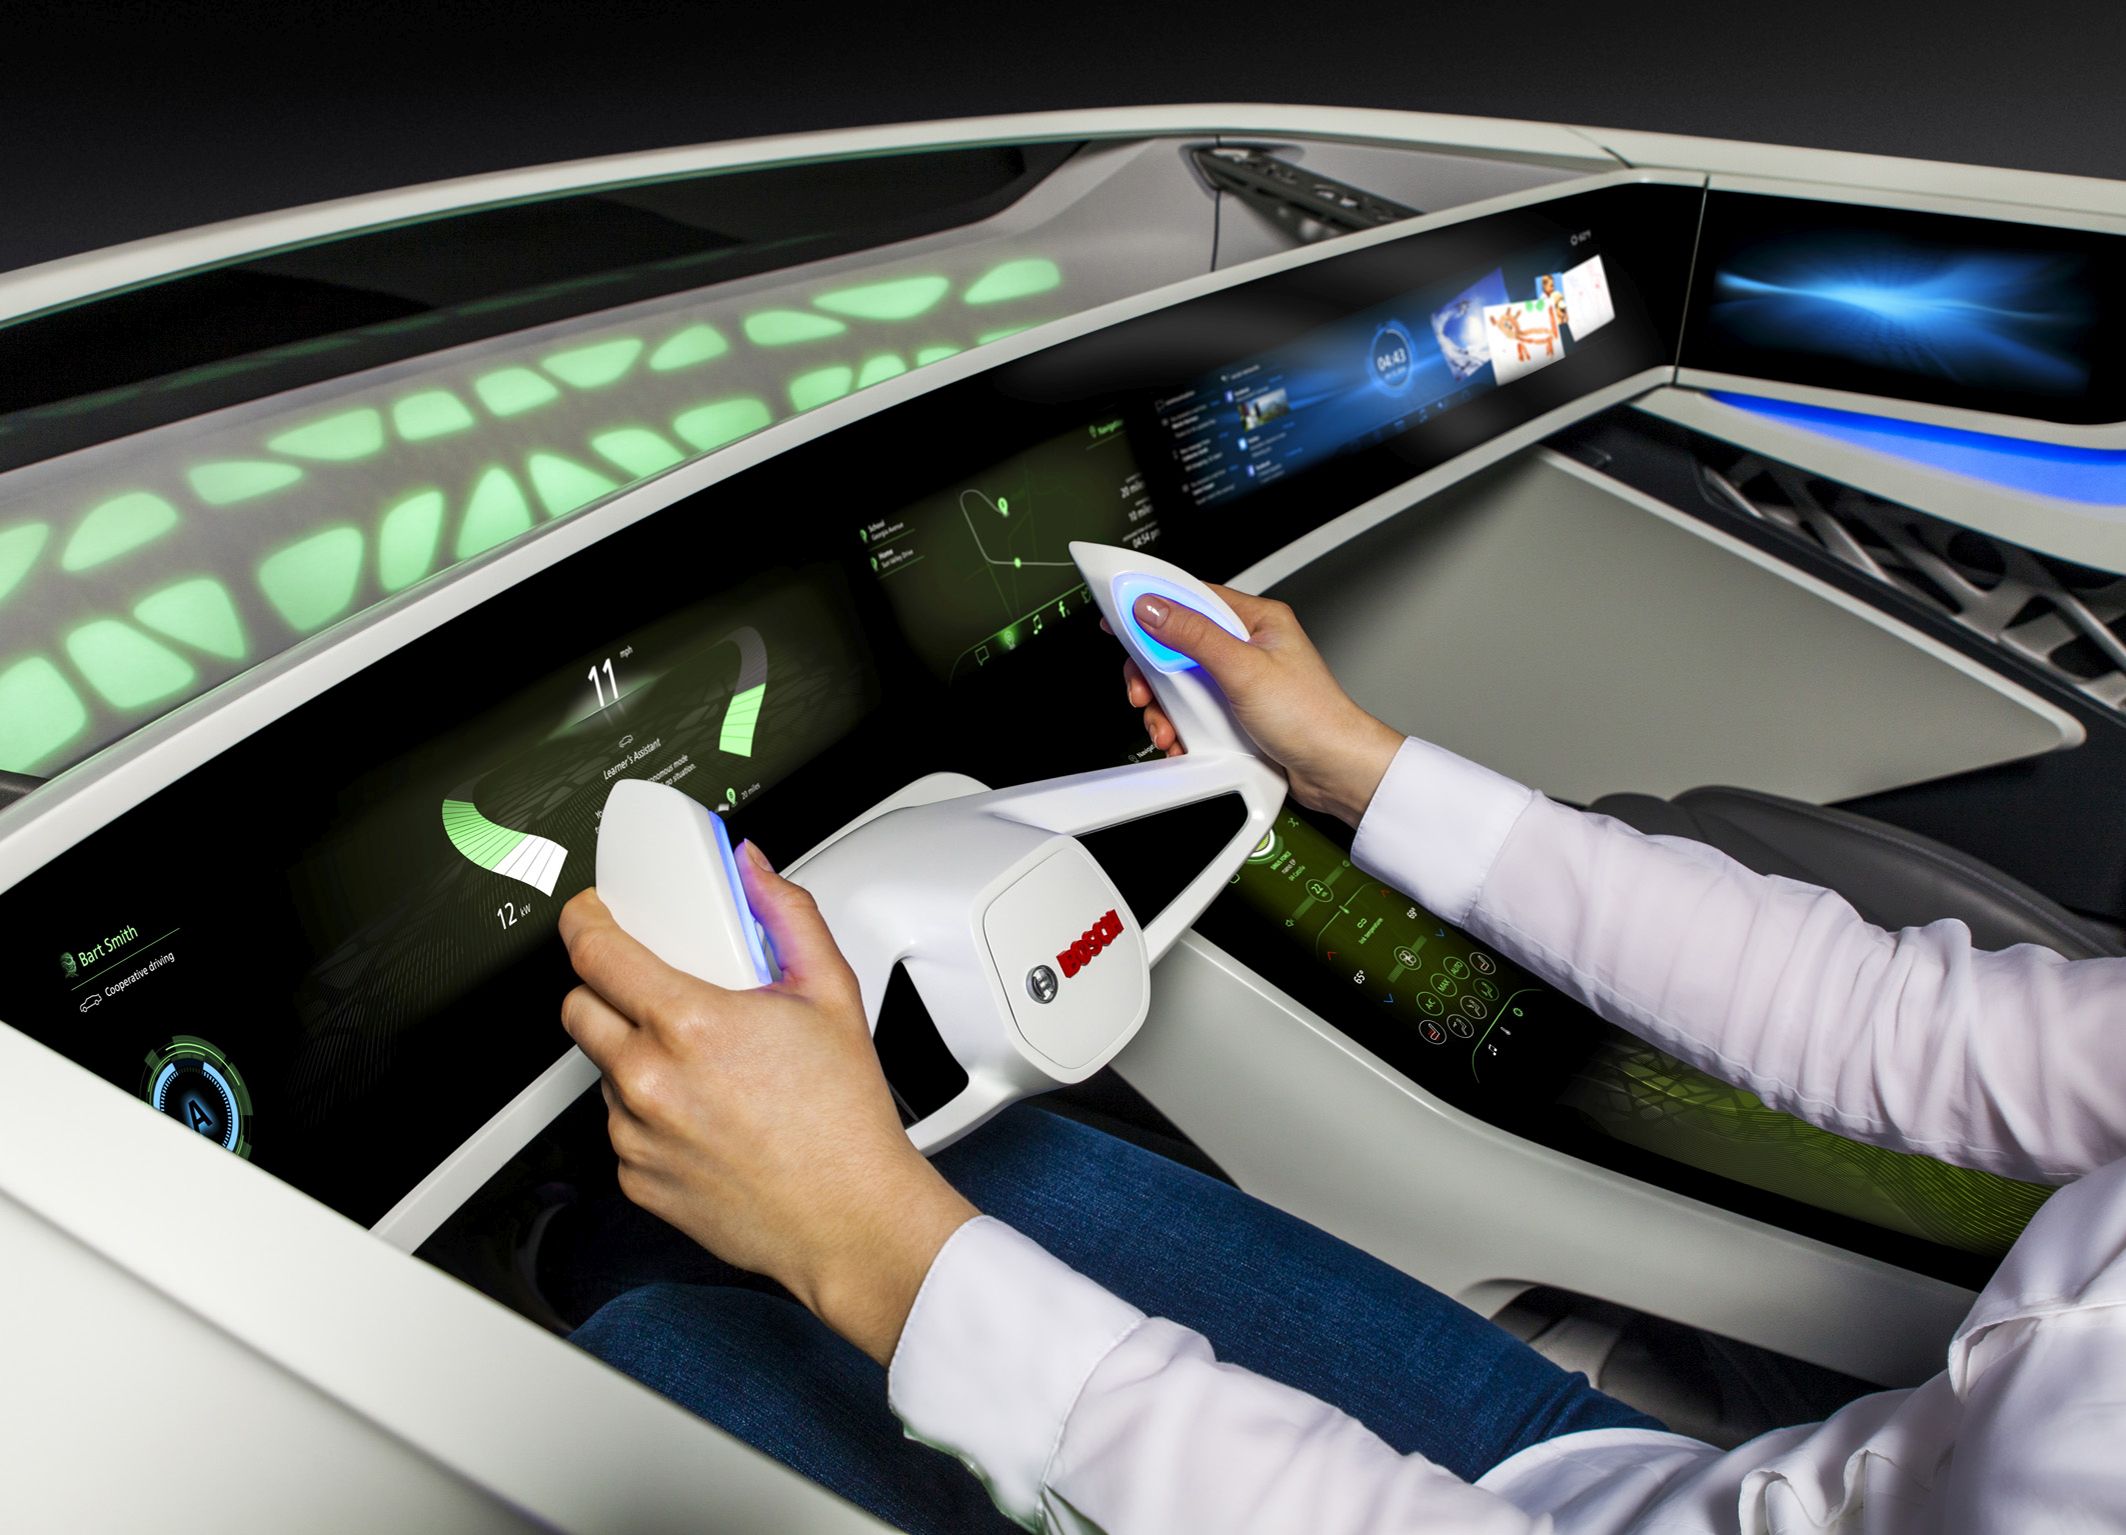 Электронные машины видео. Салон автомобиля будущего. Машины будущего. Технологии будущего автомобили. Машина электронная.